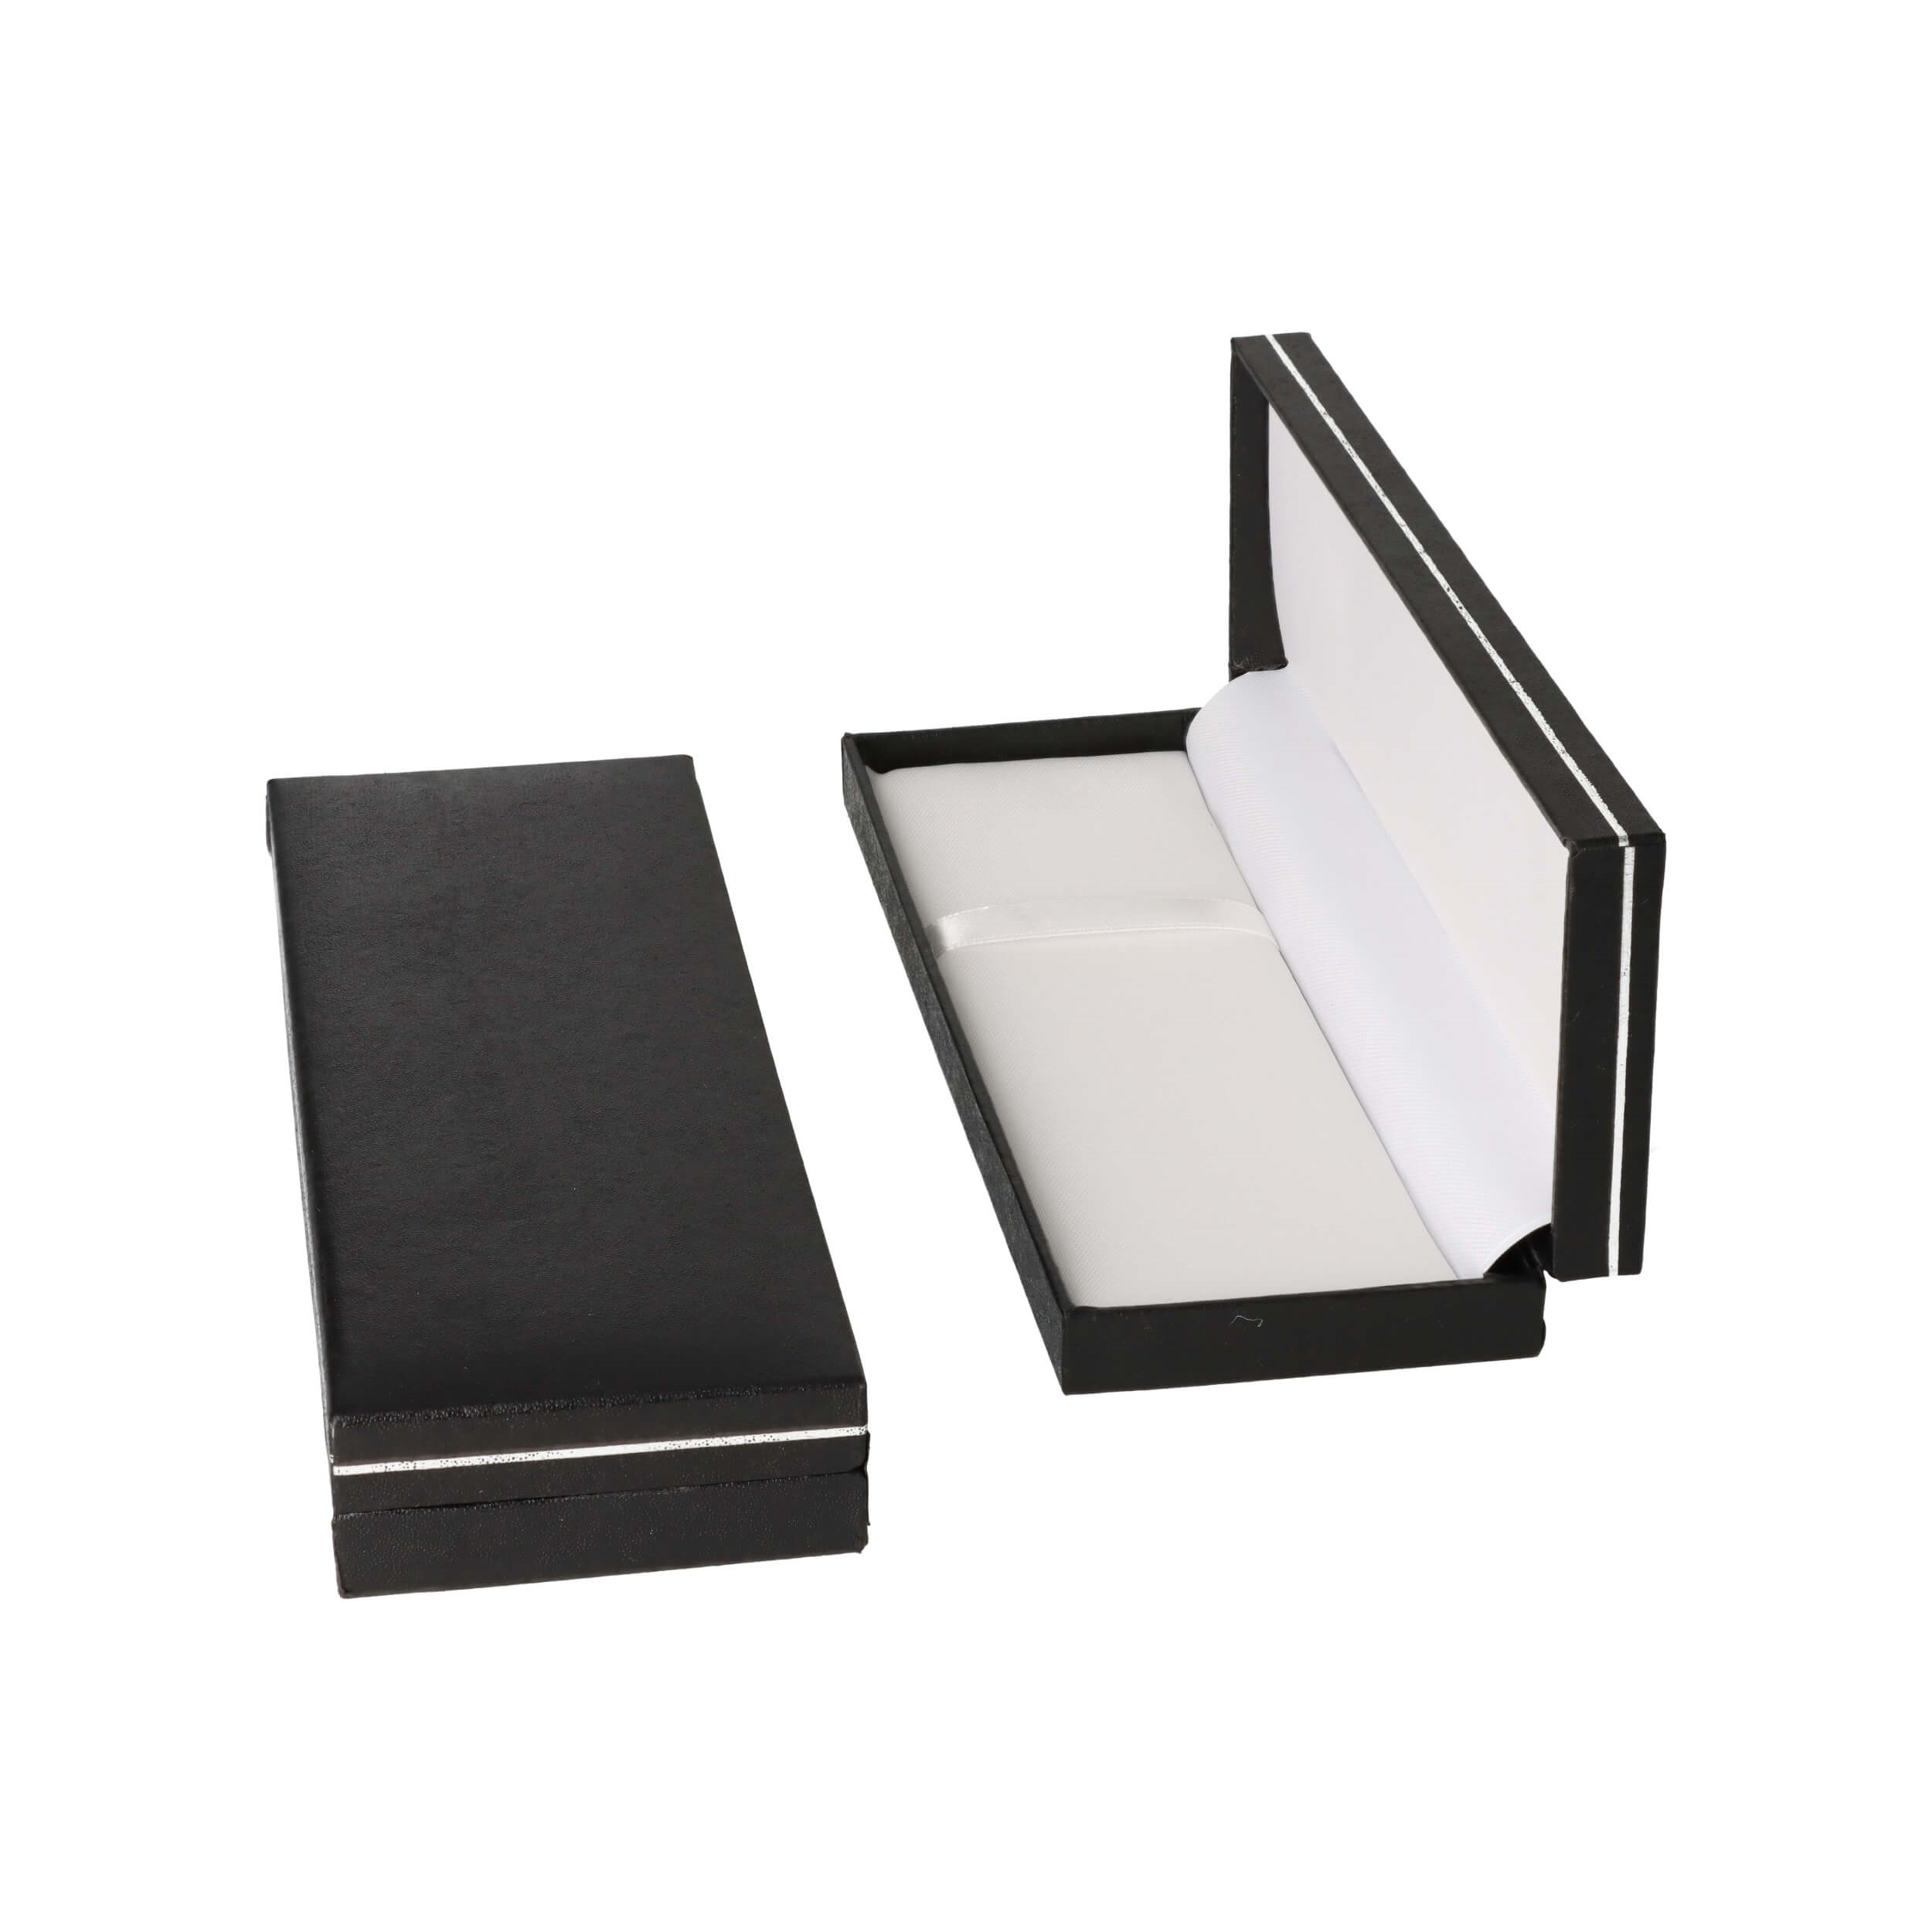 Coffret cadeau stylo noir - aspect cuir carton & papier - 170x62x25mm - Intérieur nylon blanc - 74g poids plume